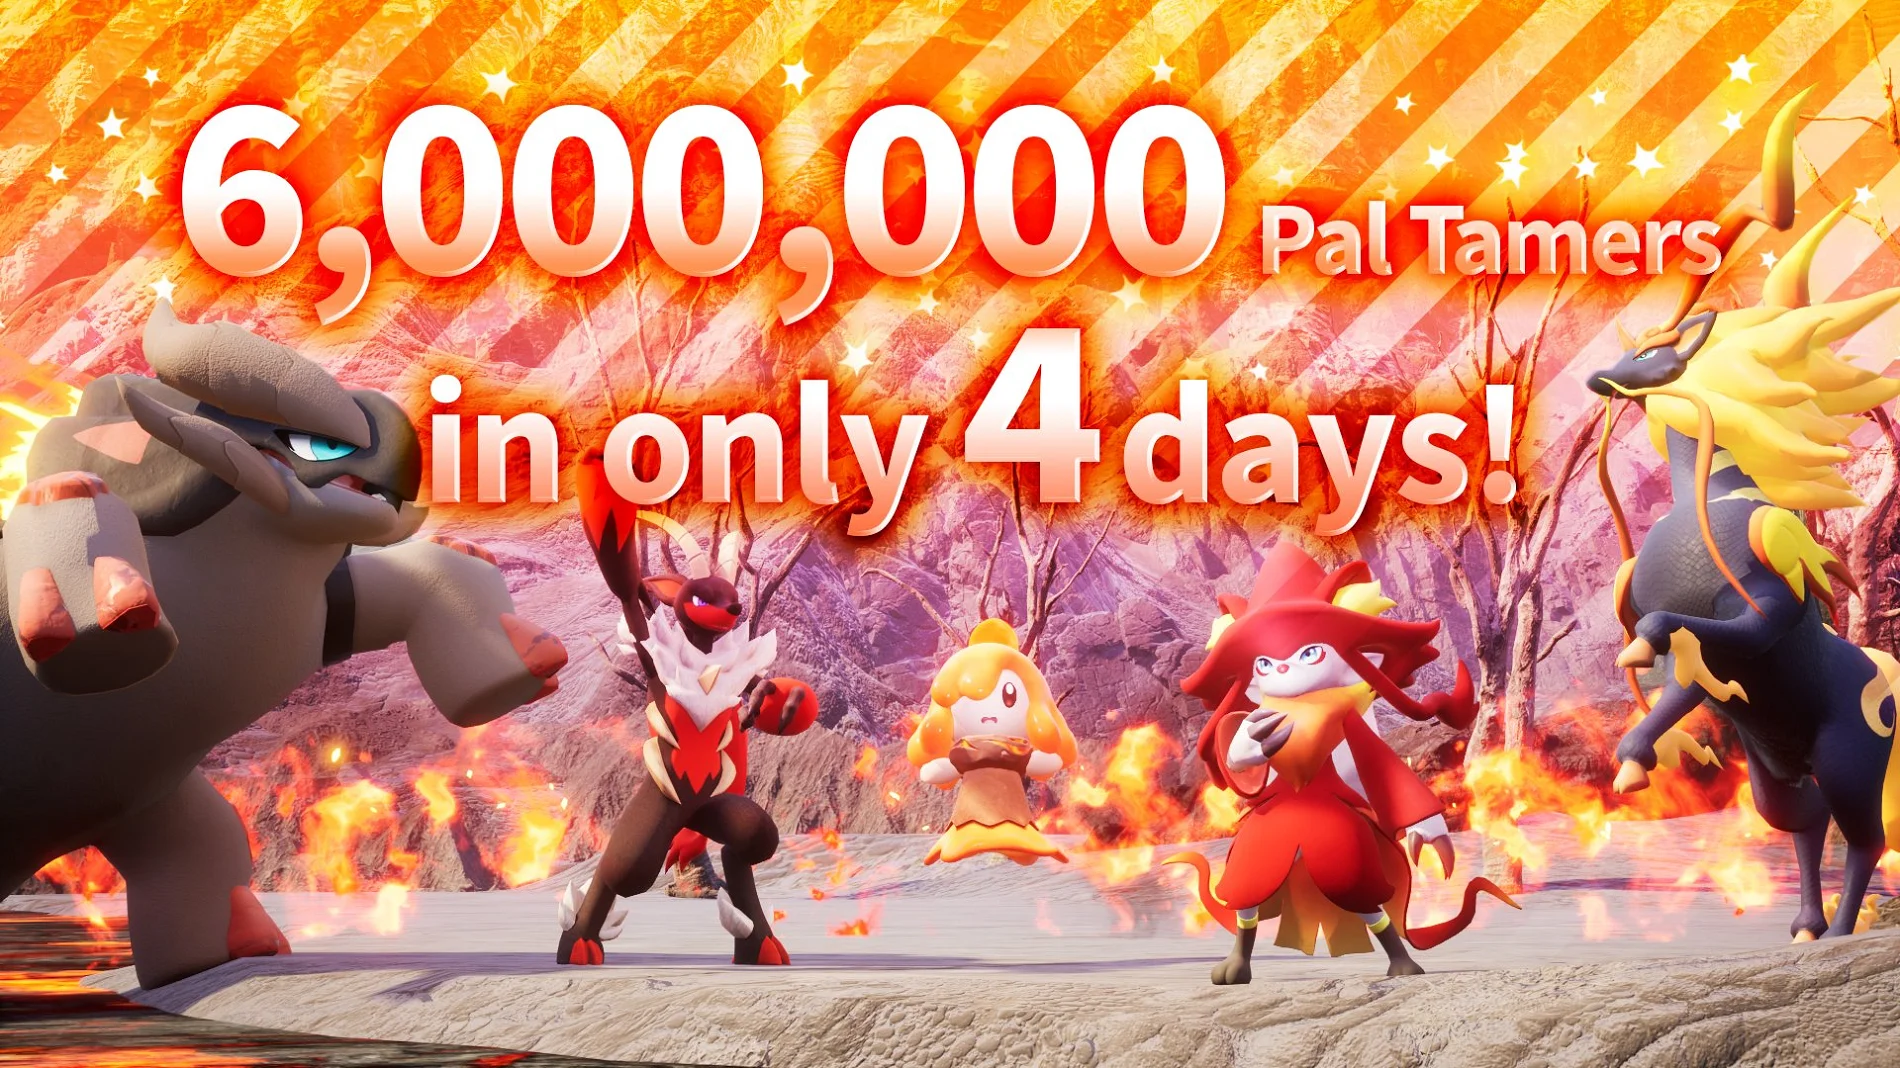 Продажи Palworld с вооружёнными «покемонами» превысили 6 млн копий за 4 дня - фото 1